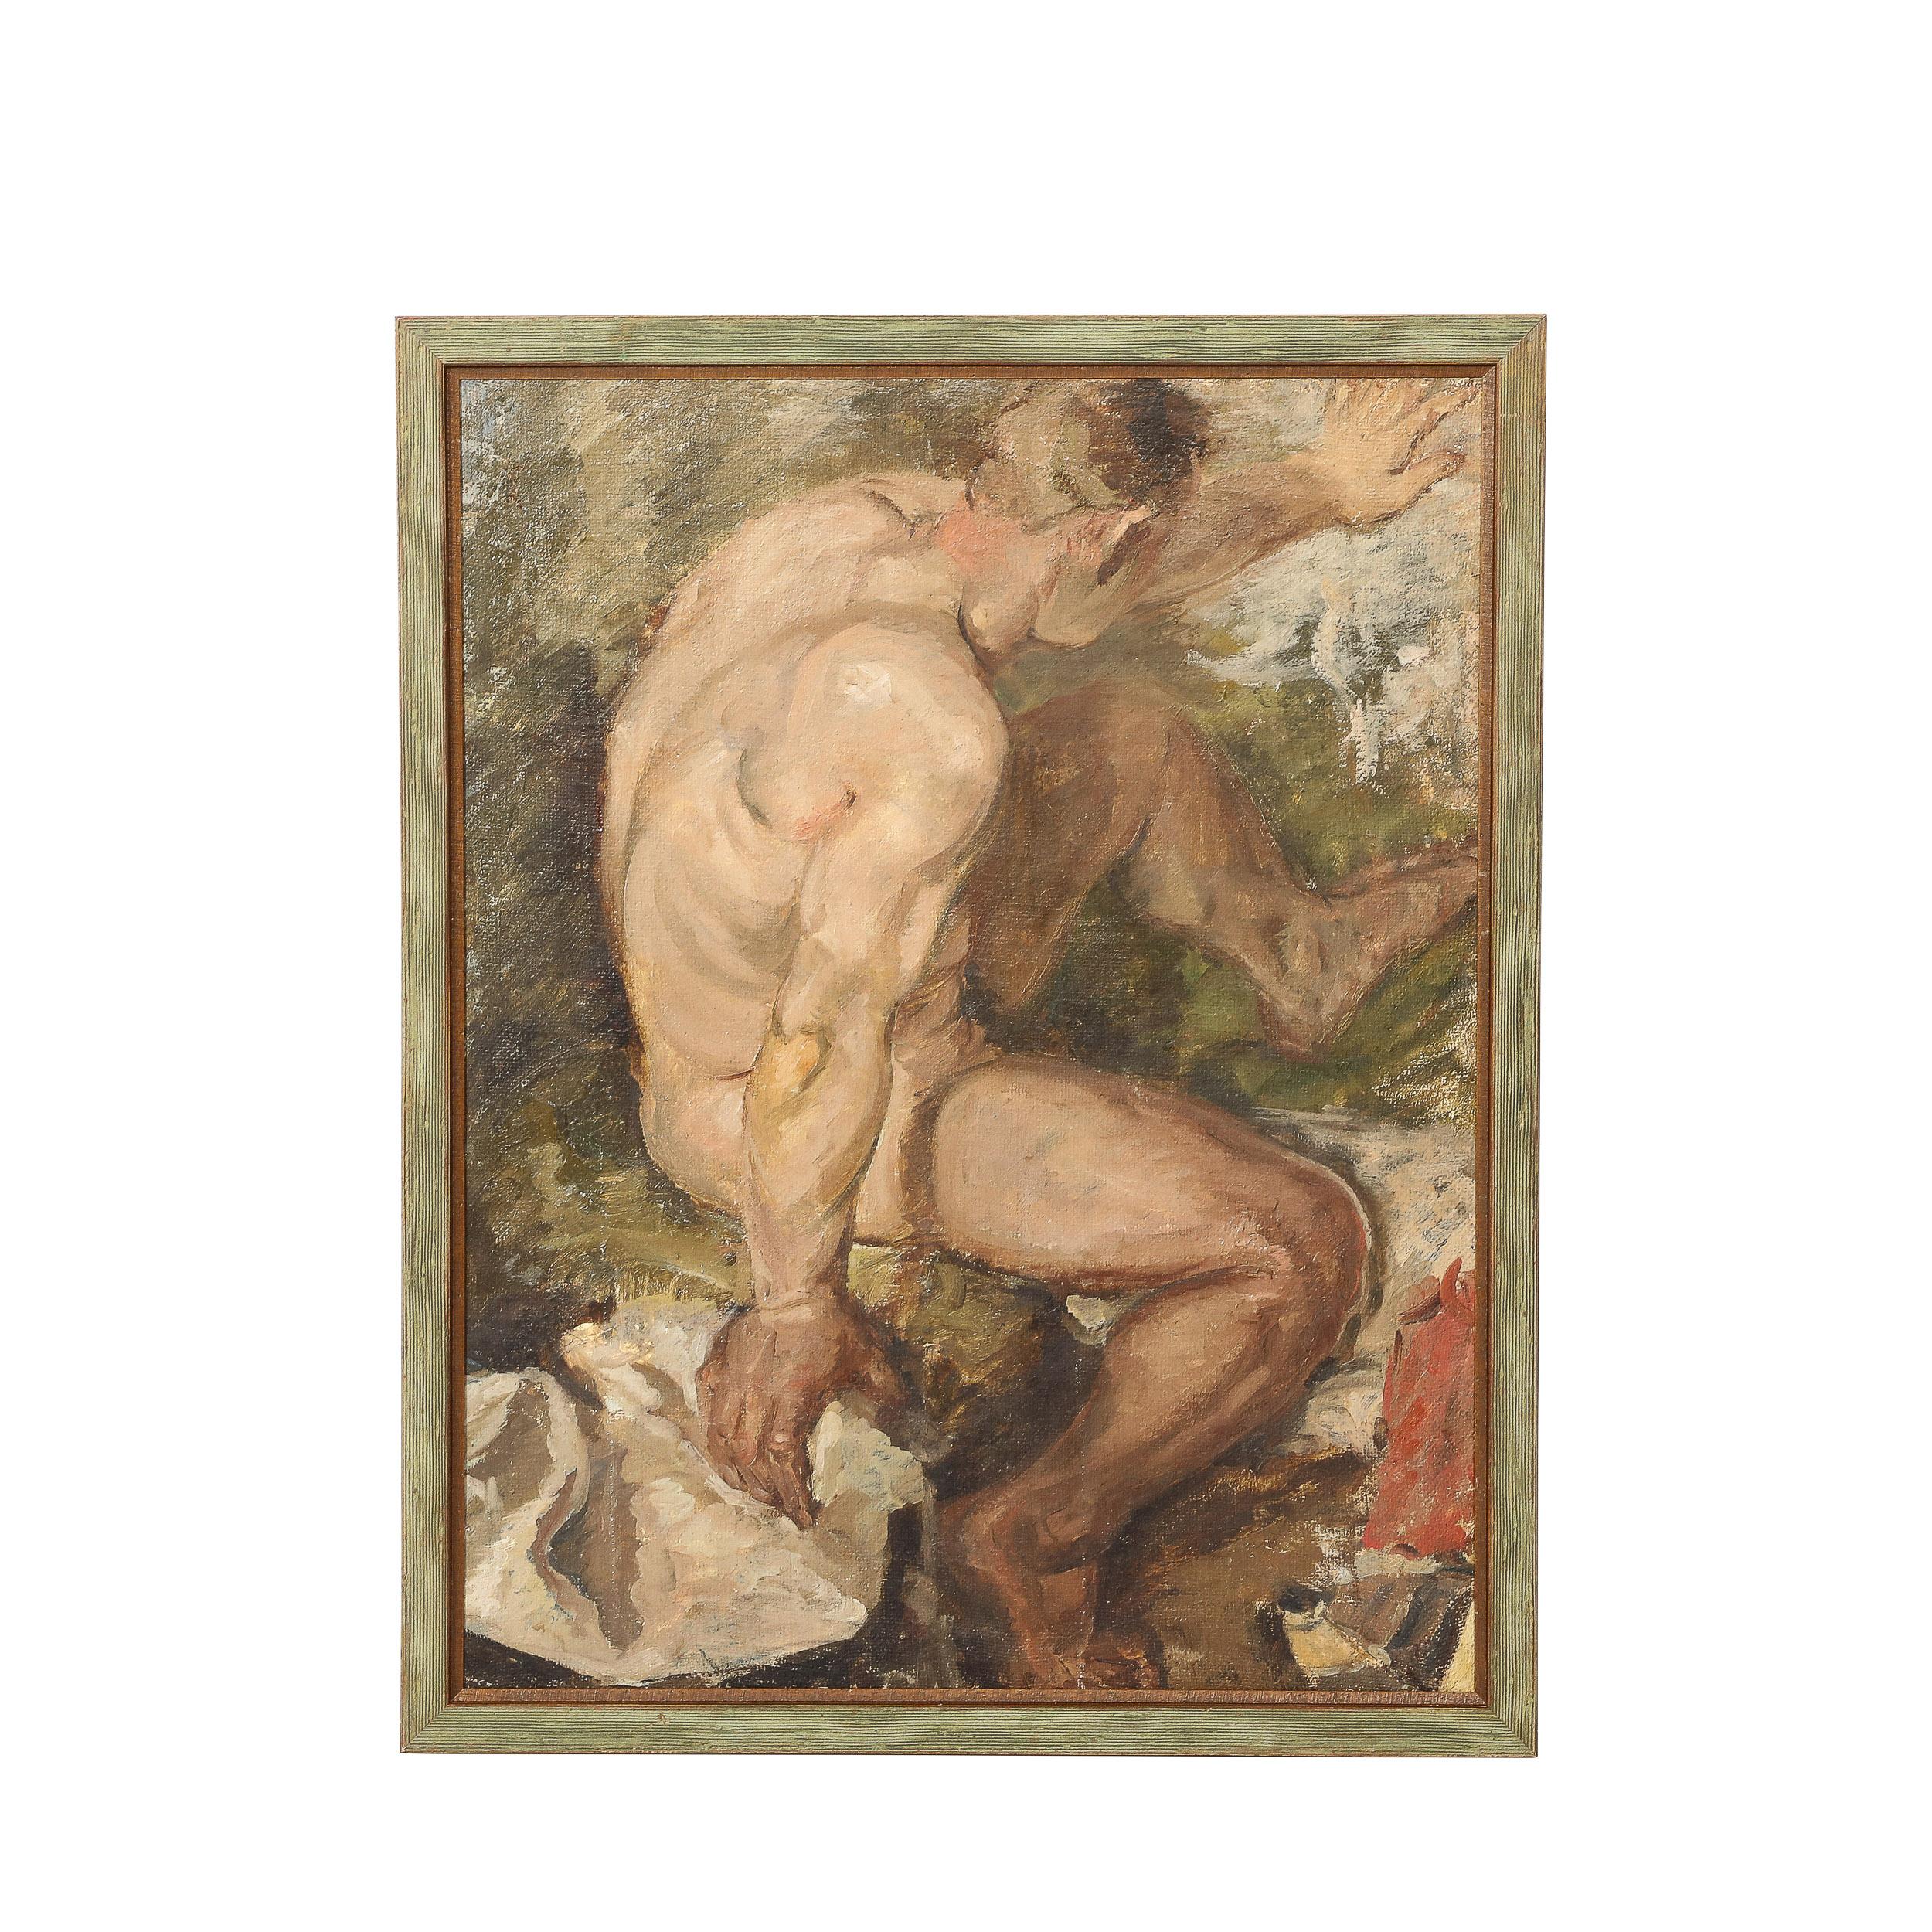 Romantisches Ölgemälde auf Sackleinen mit einer nackten männlichen Figur, die in einem Fluss badet 